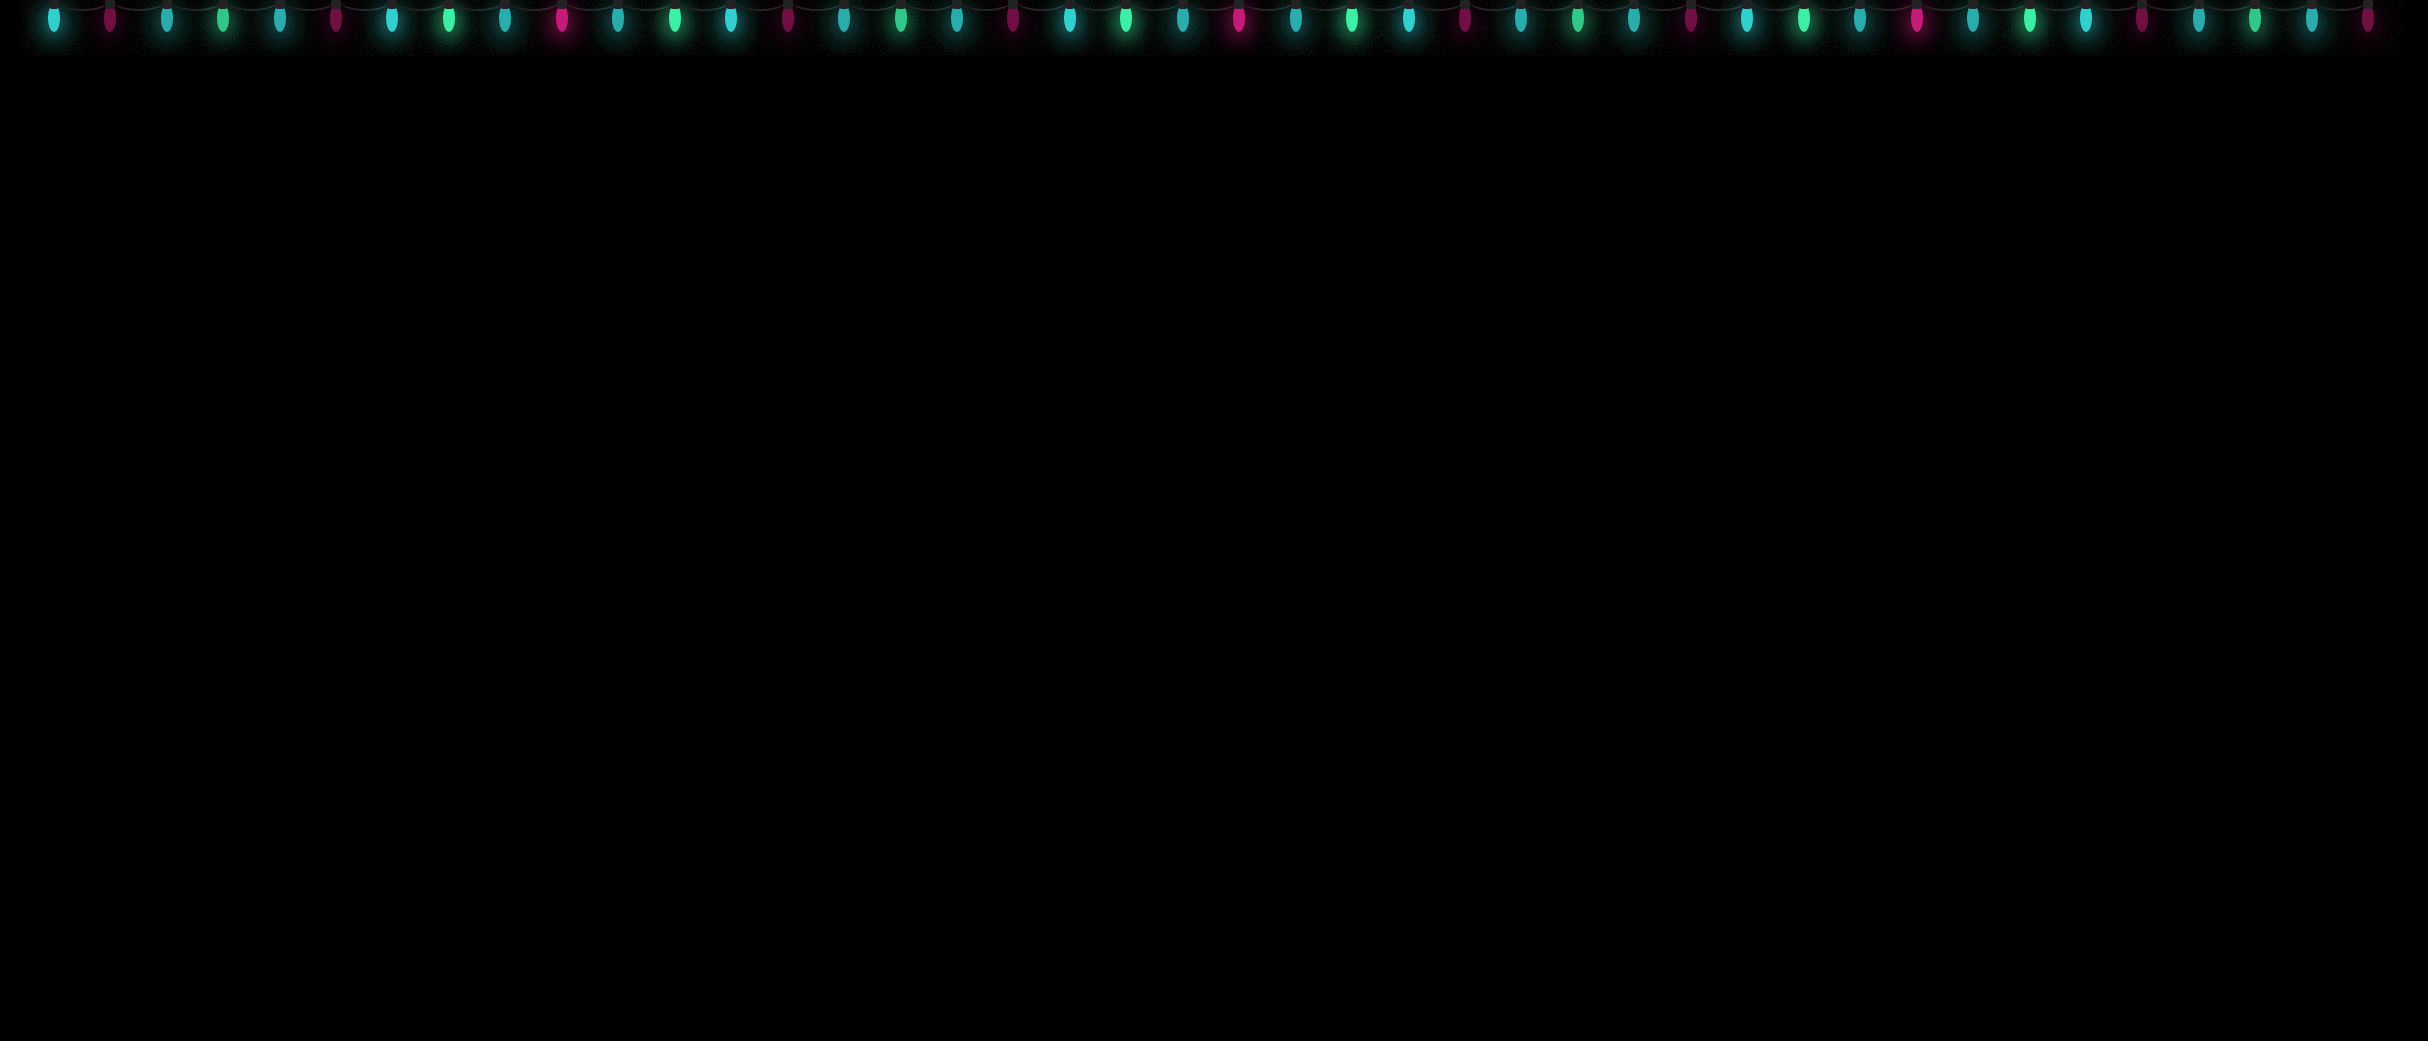 CSS Christmas Lights